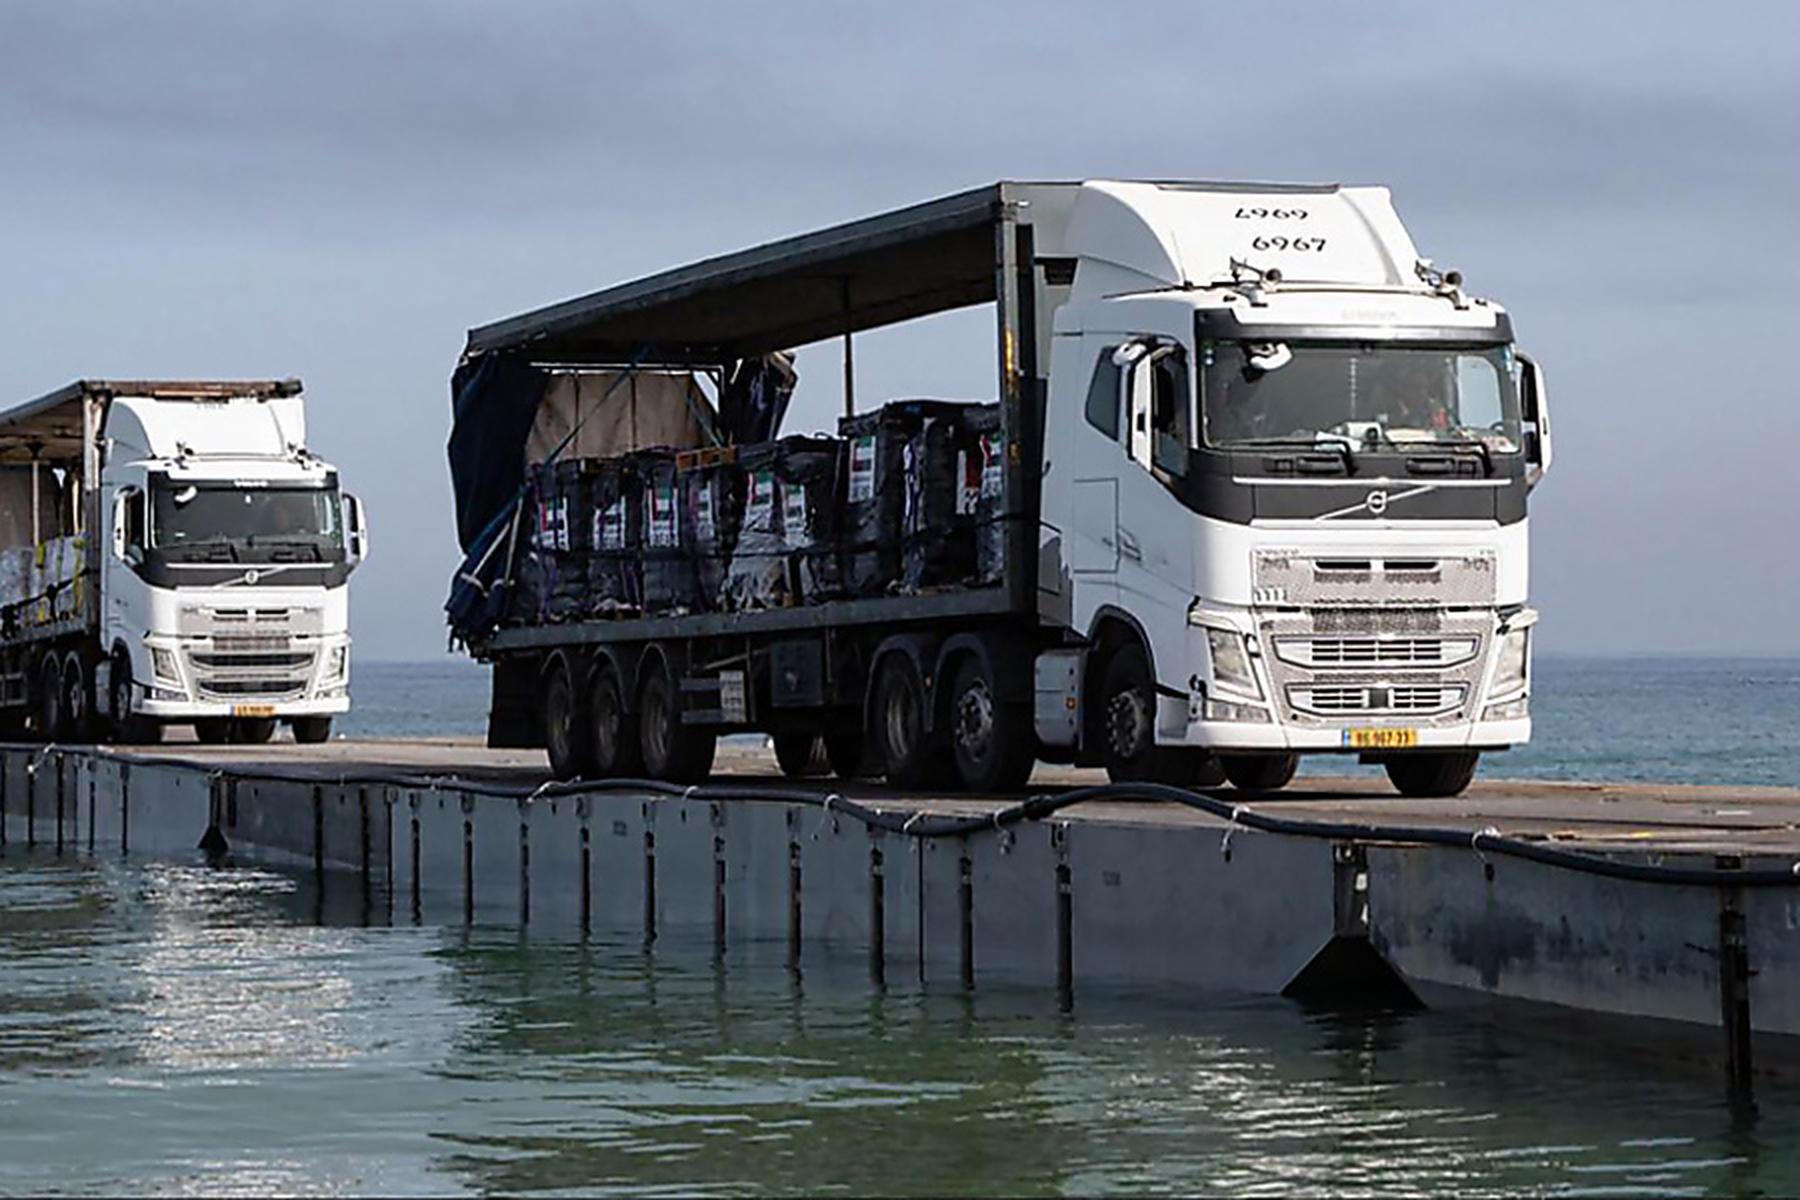 Gaza: Knapp 570 Tonnen humanitäre Hilfe über Gaza-Pier geliefert